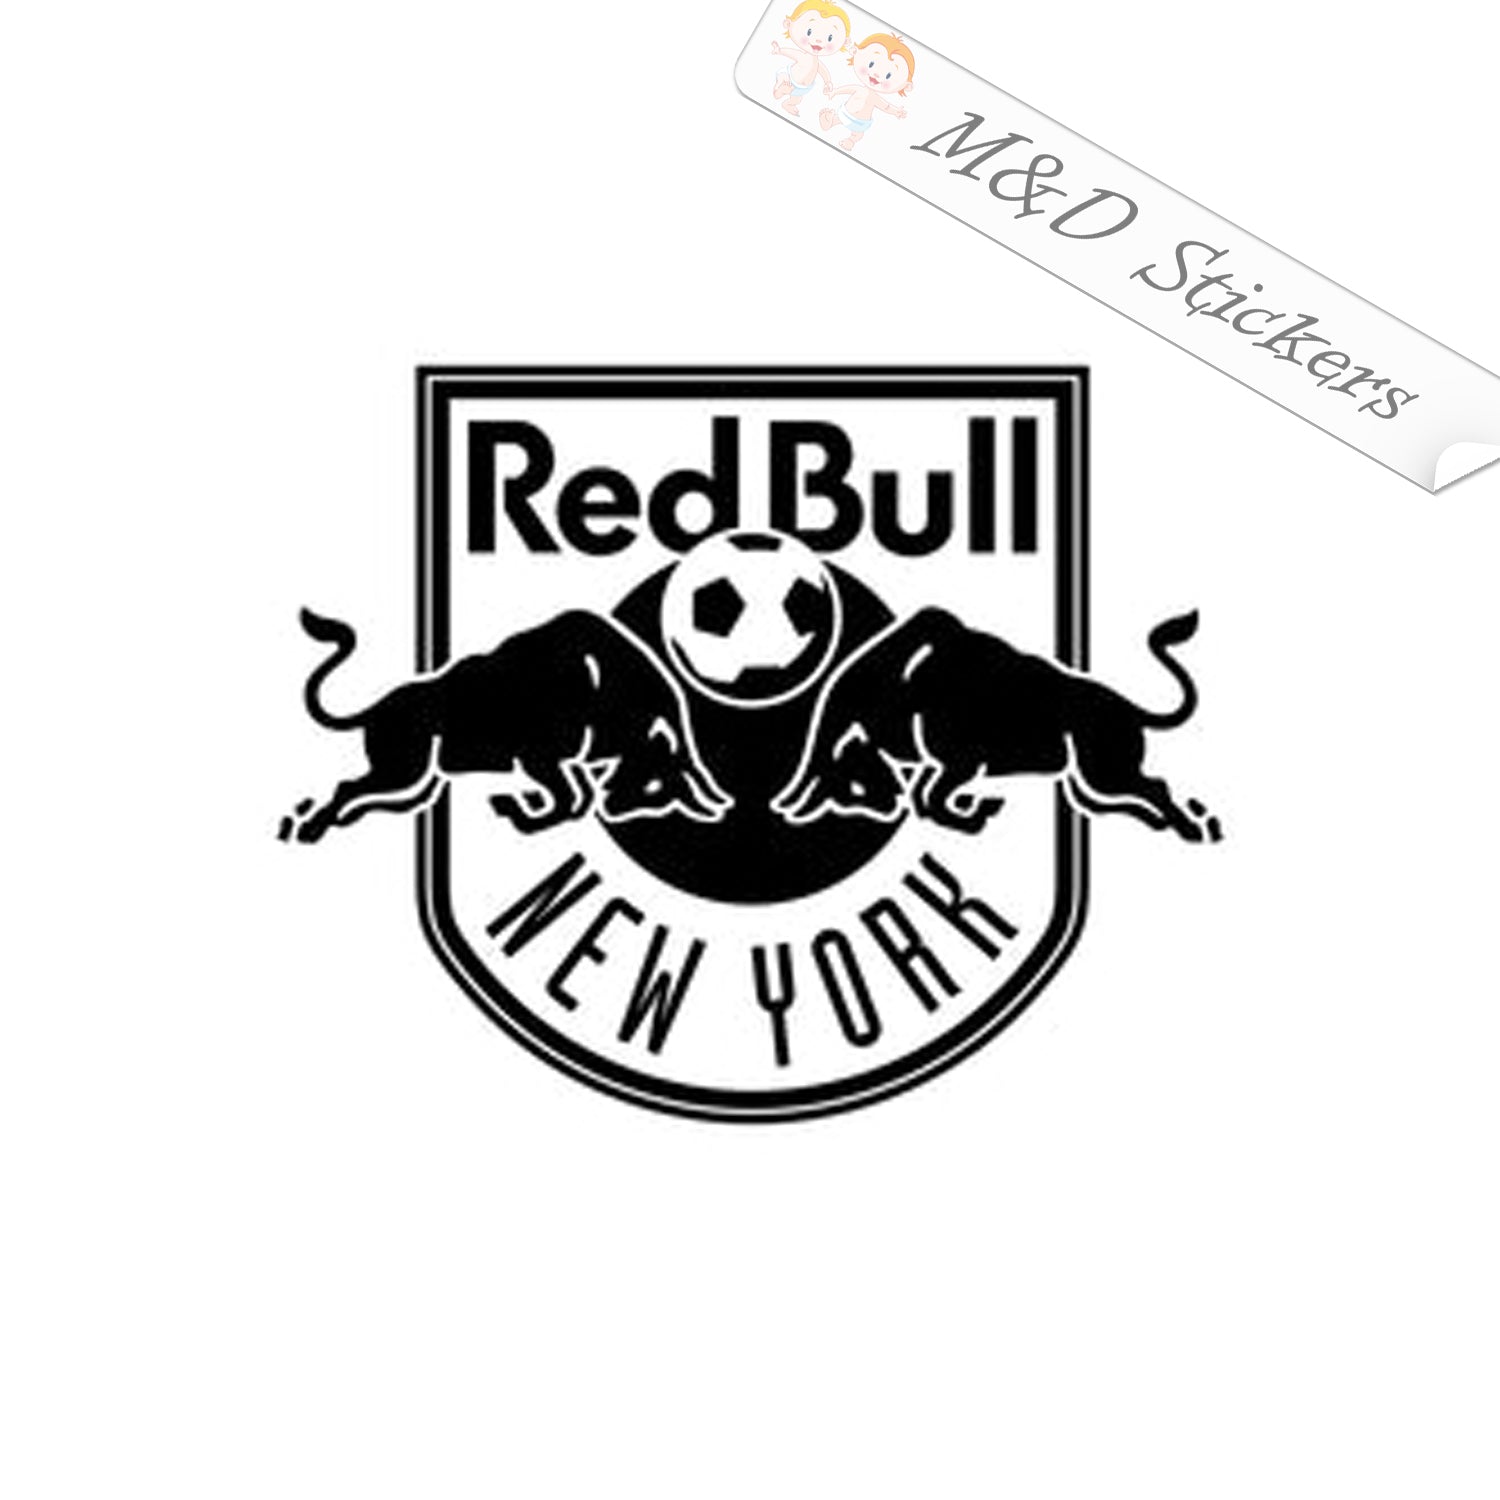 red bull logo black and white